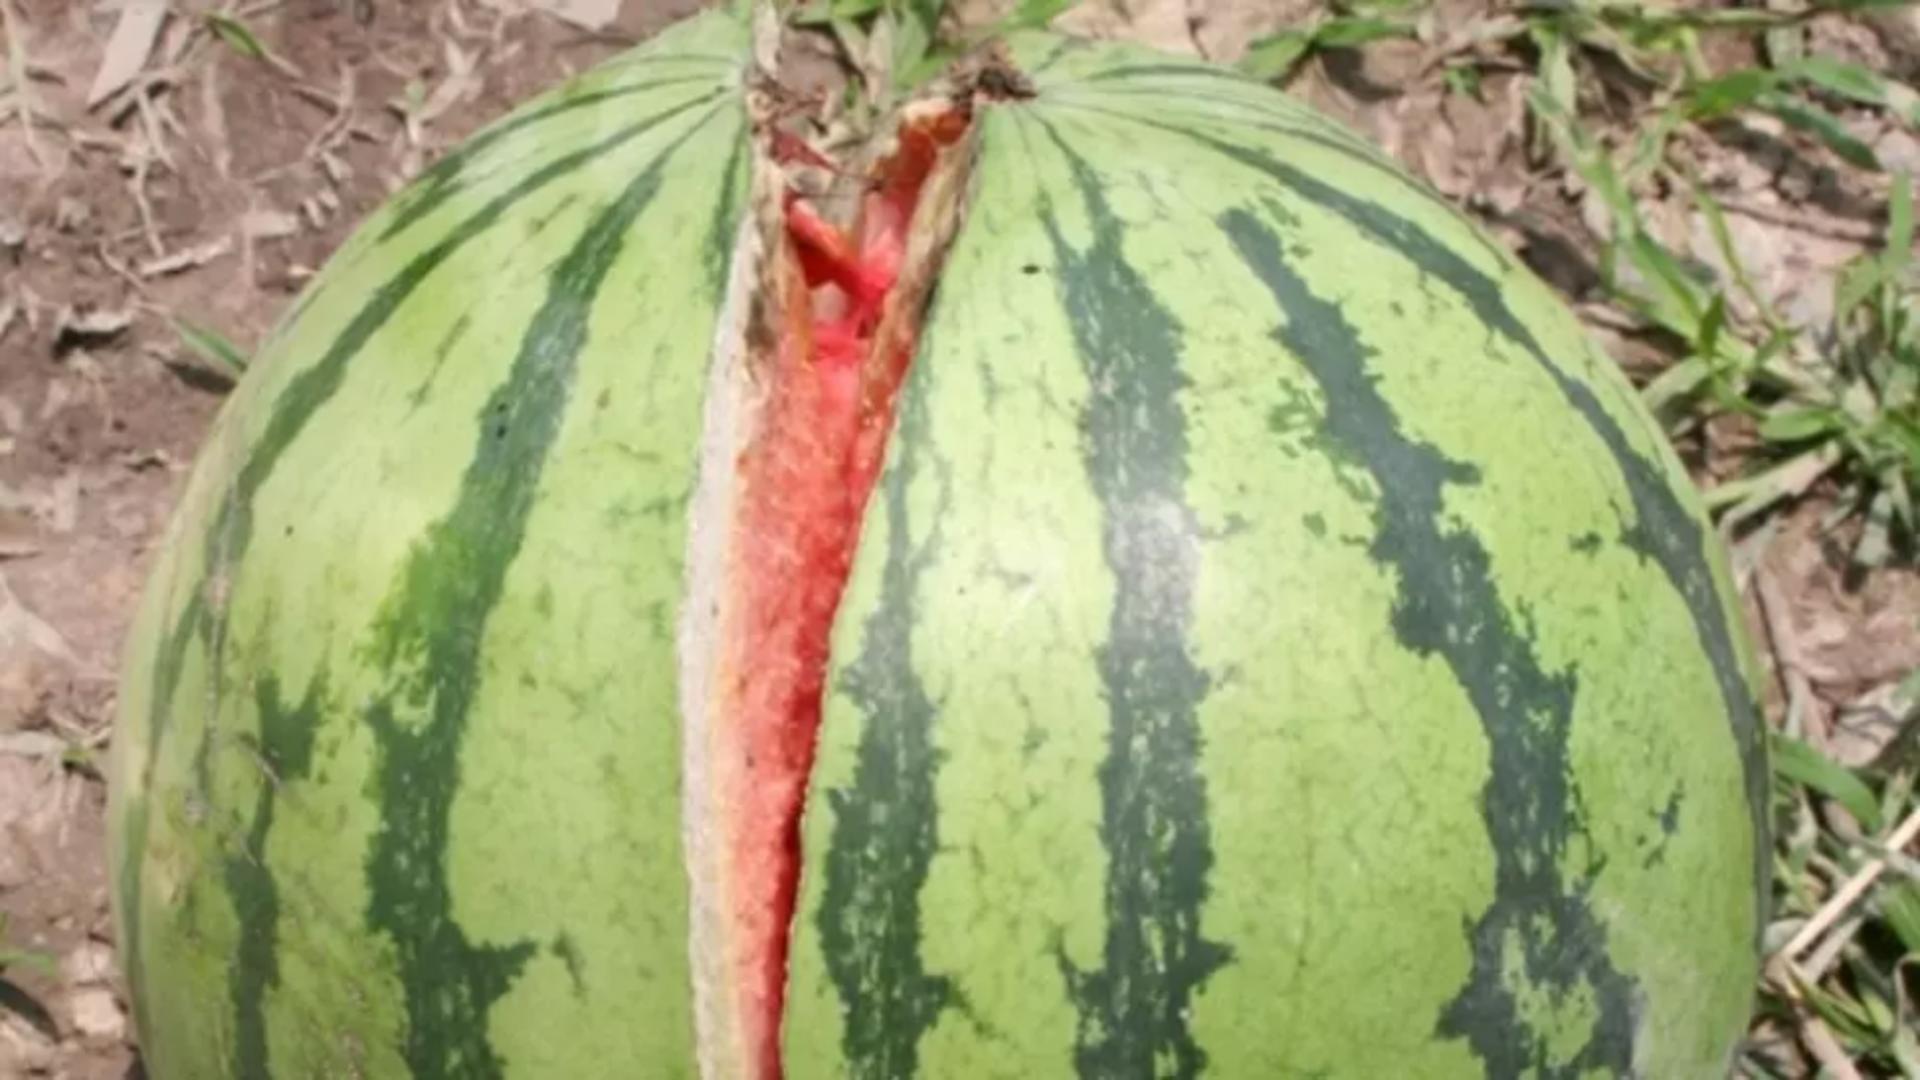 VIDEO – A crăpat pepenele și se auzea un zgomot ciudat din interior – Ce a ieșit din interior – Imaginile au devenit virale instant